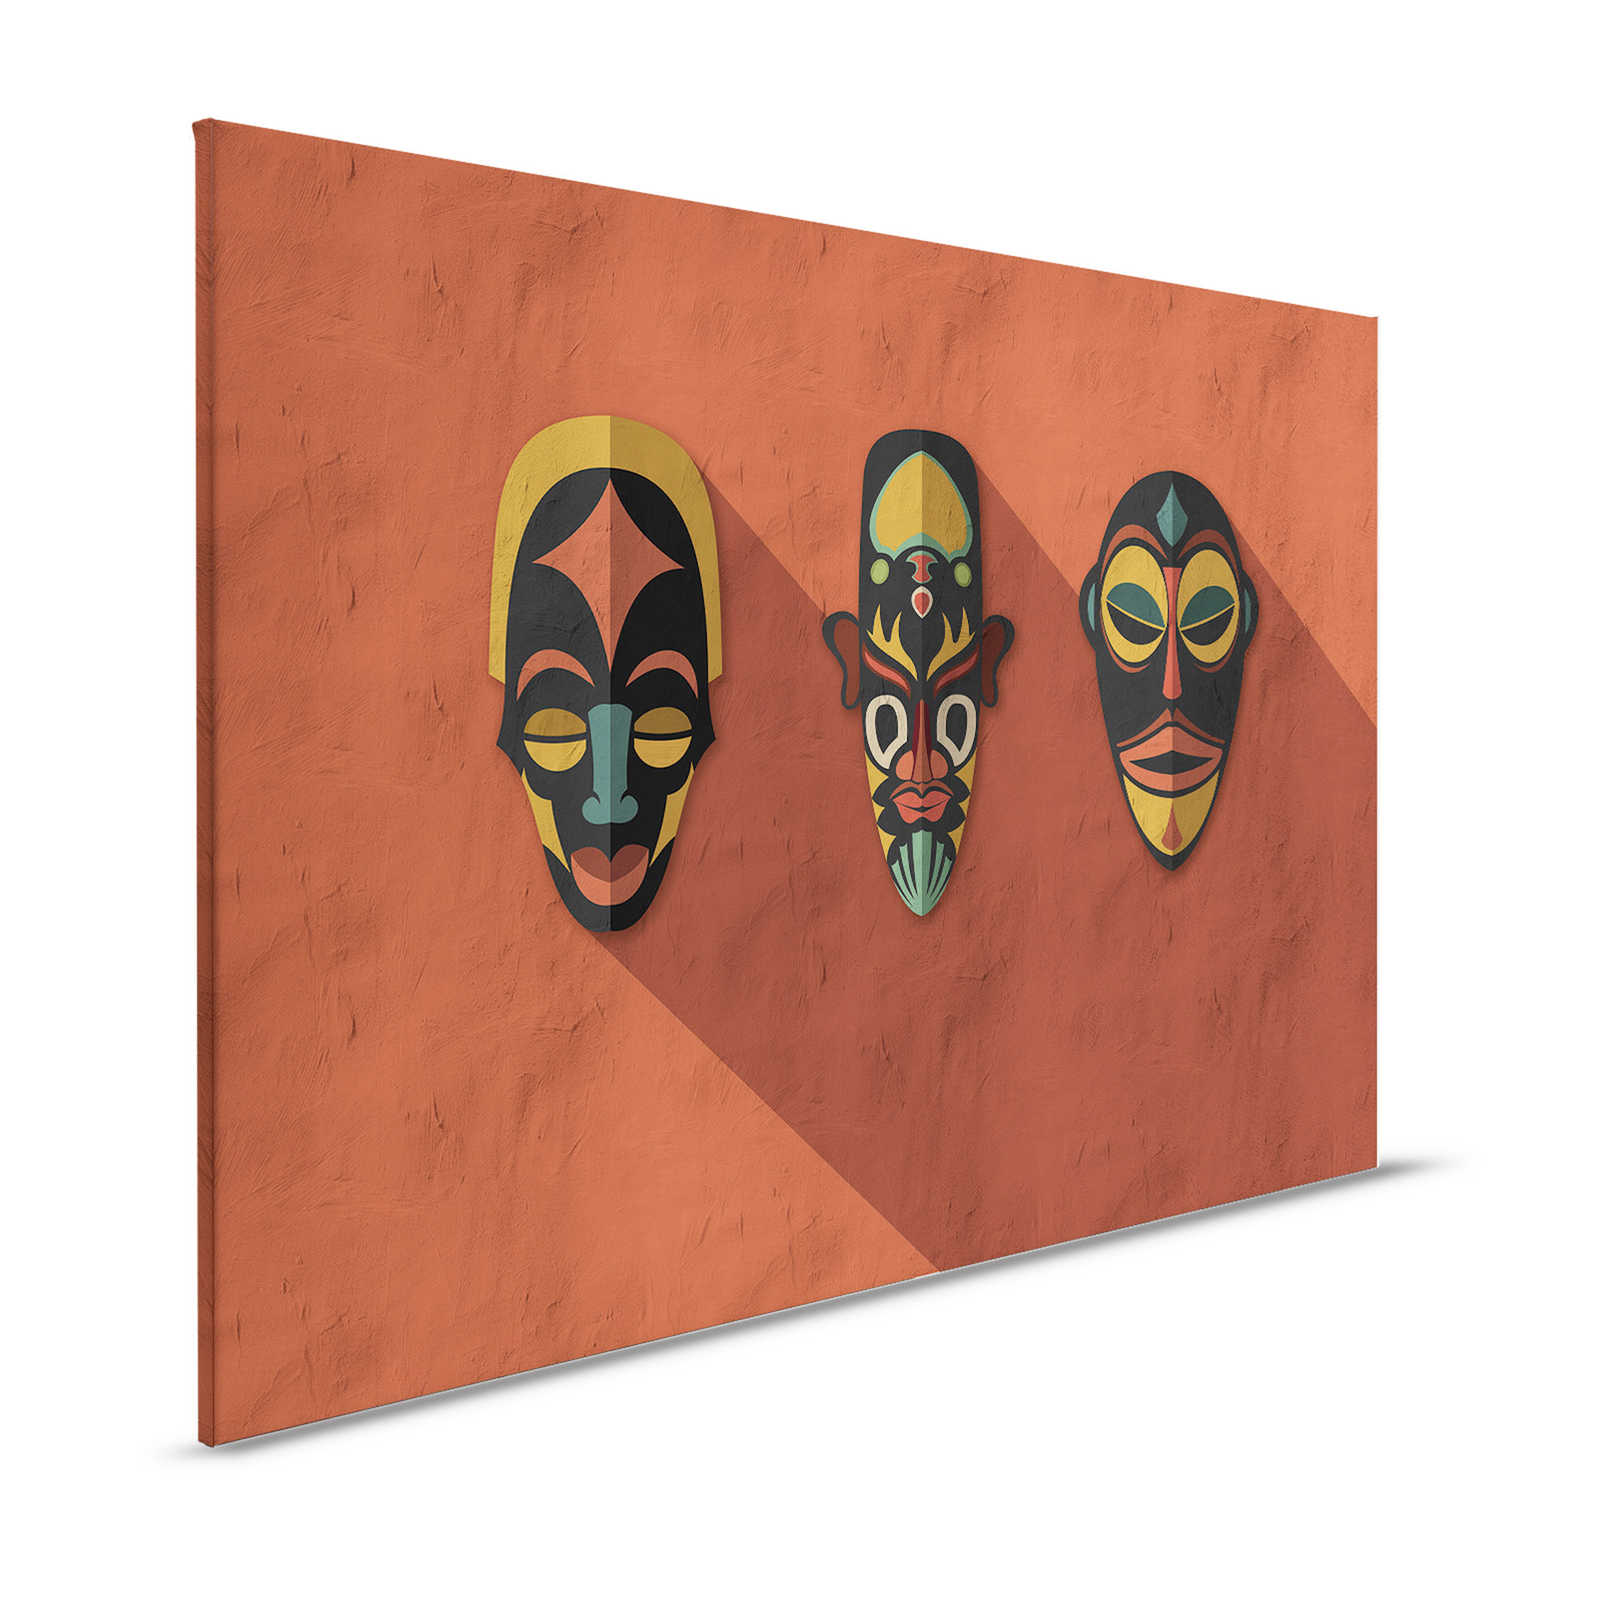 Zulu 2 - Toile Terracota Orange, Africa Masks Zulu Style - 1,20 m x 0,80 m
